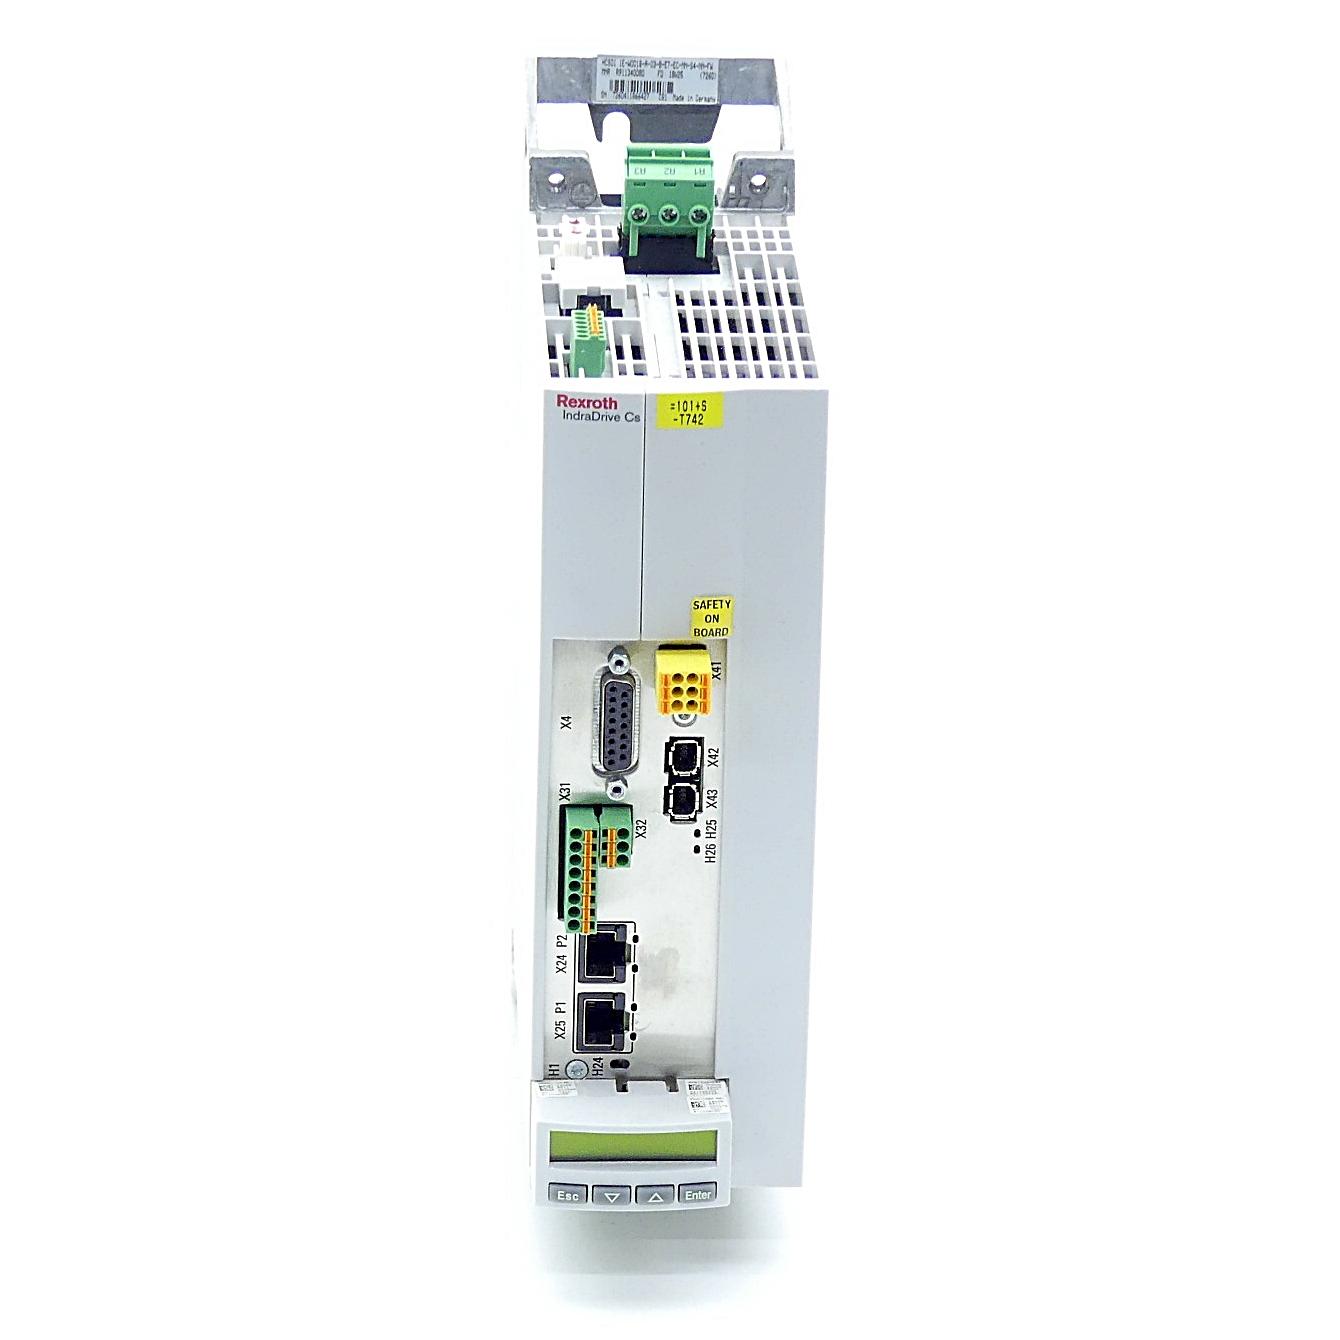 Produktfoto 6 von REXROTH IndraDrive Kompaktumrichter HCS01.1E-W0018-A-03-B-ET-EC-NN-S4-NN-FW